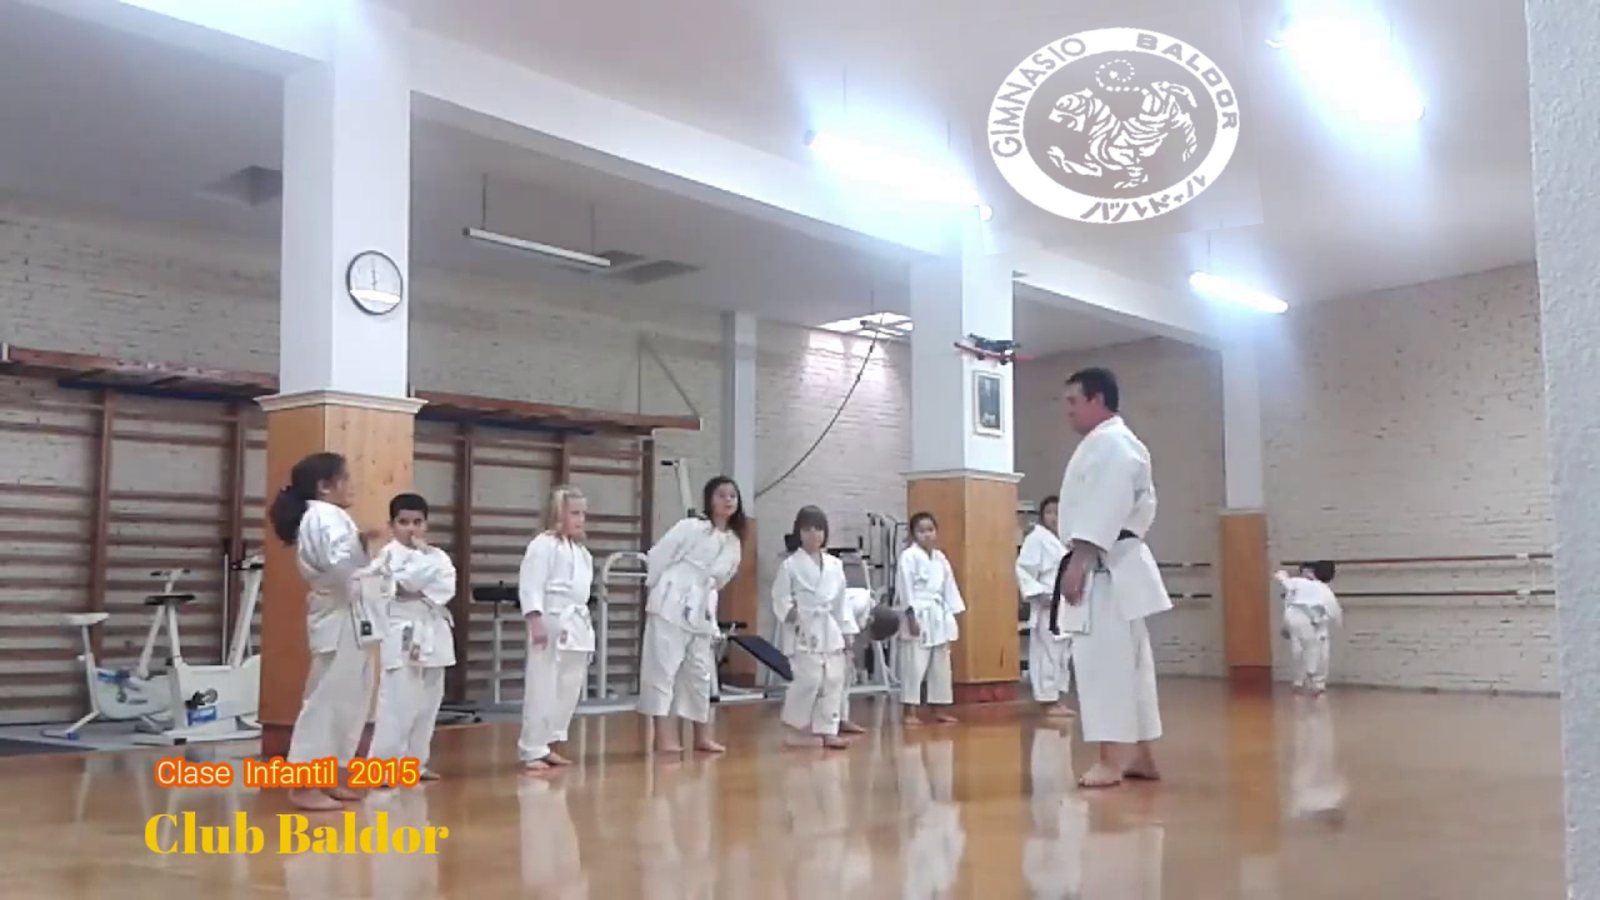 Enseñando "Heian Shodan" en clase Iniciación de Karate Infantil /2015